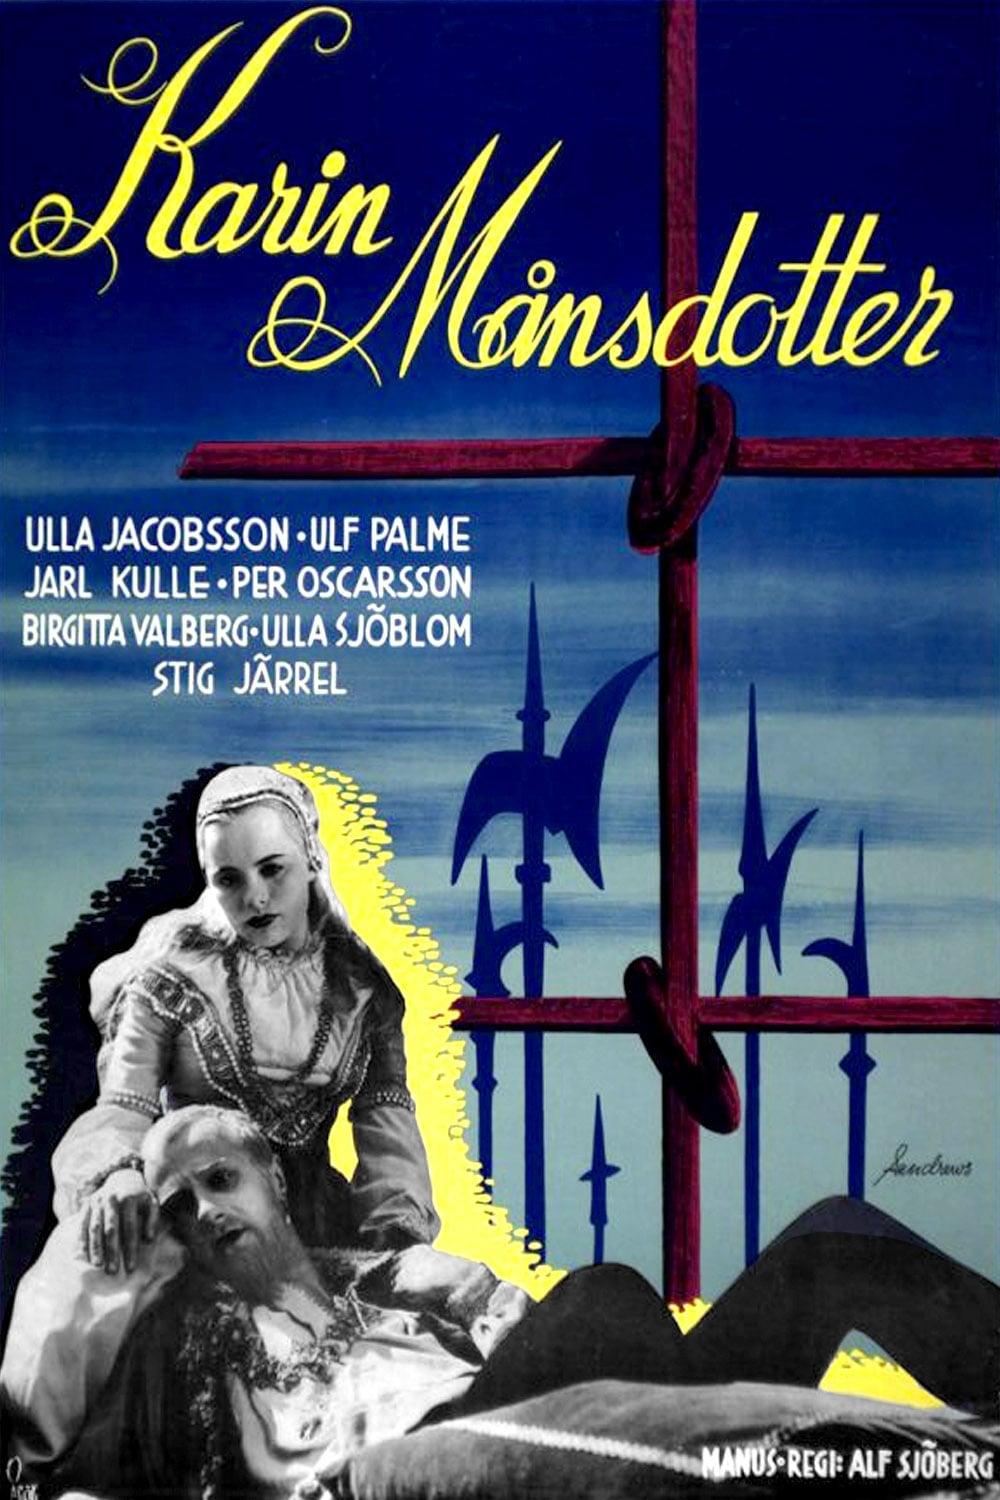 Karin Mansdotter poster